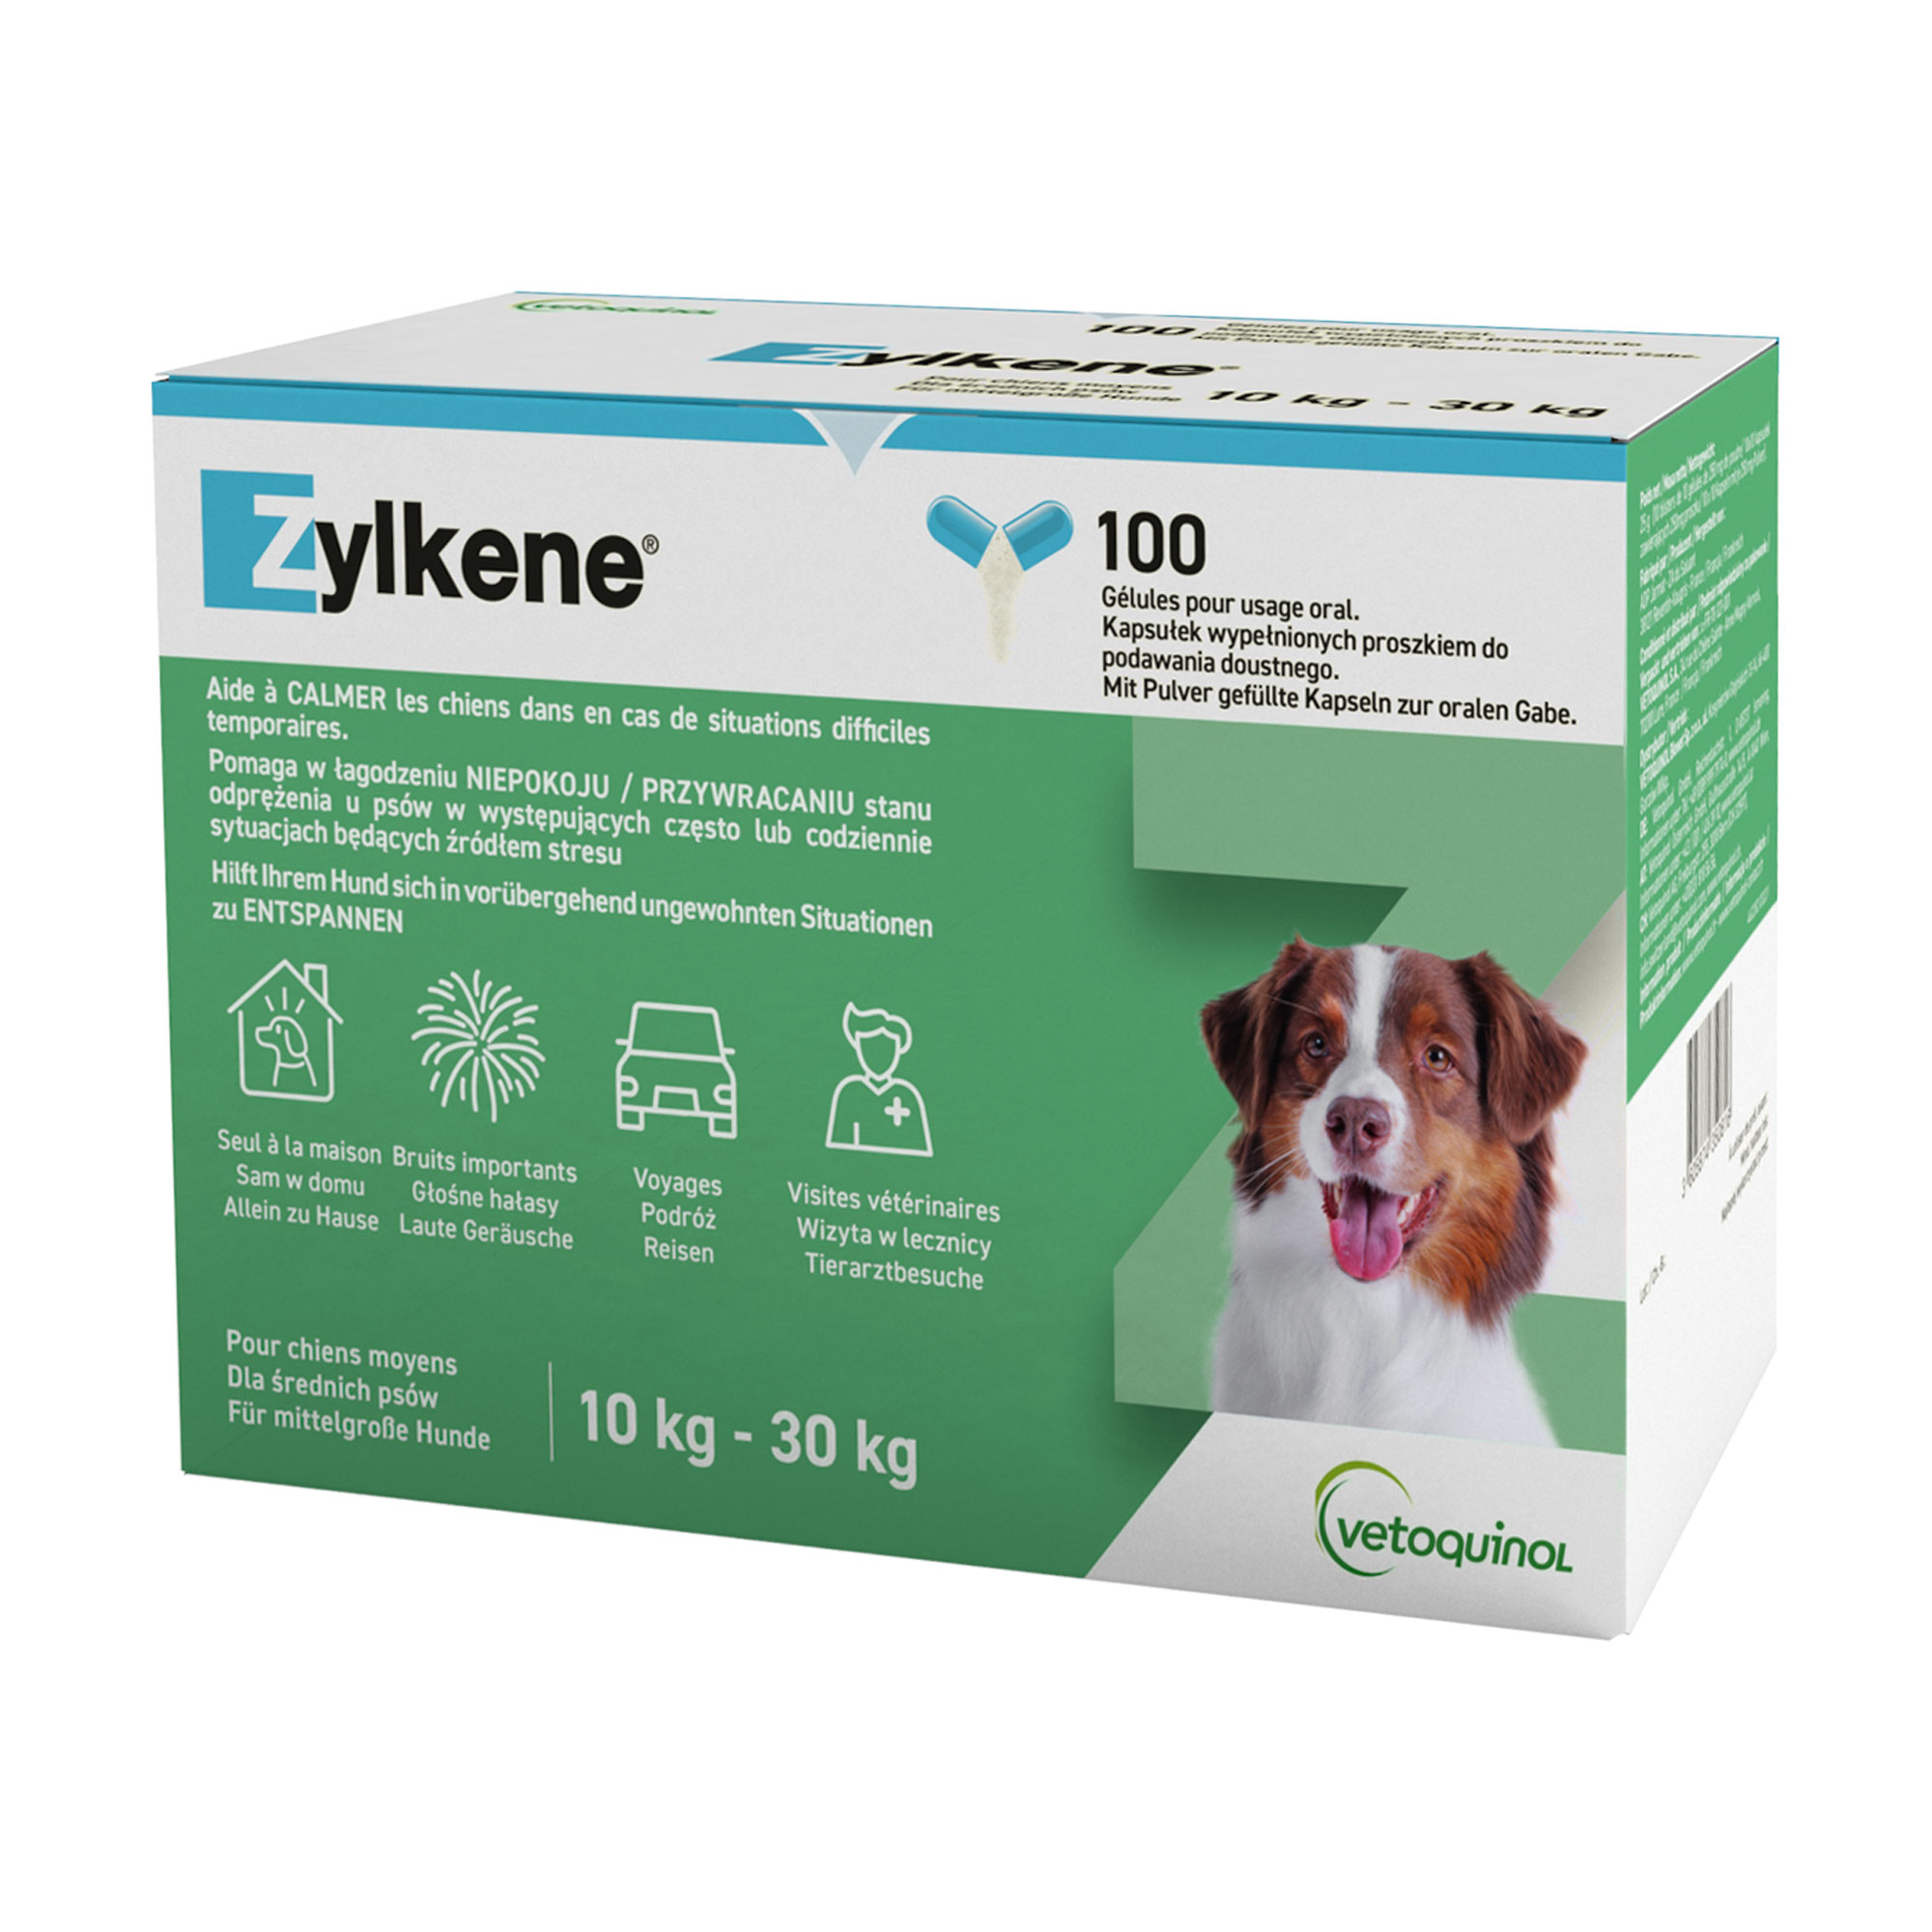 Ergänzungsfuttermittel für mittelgroße Hunde (10-30 kg).